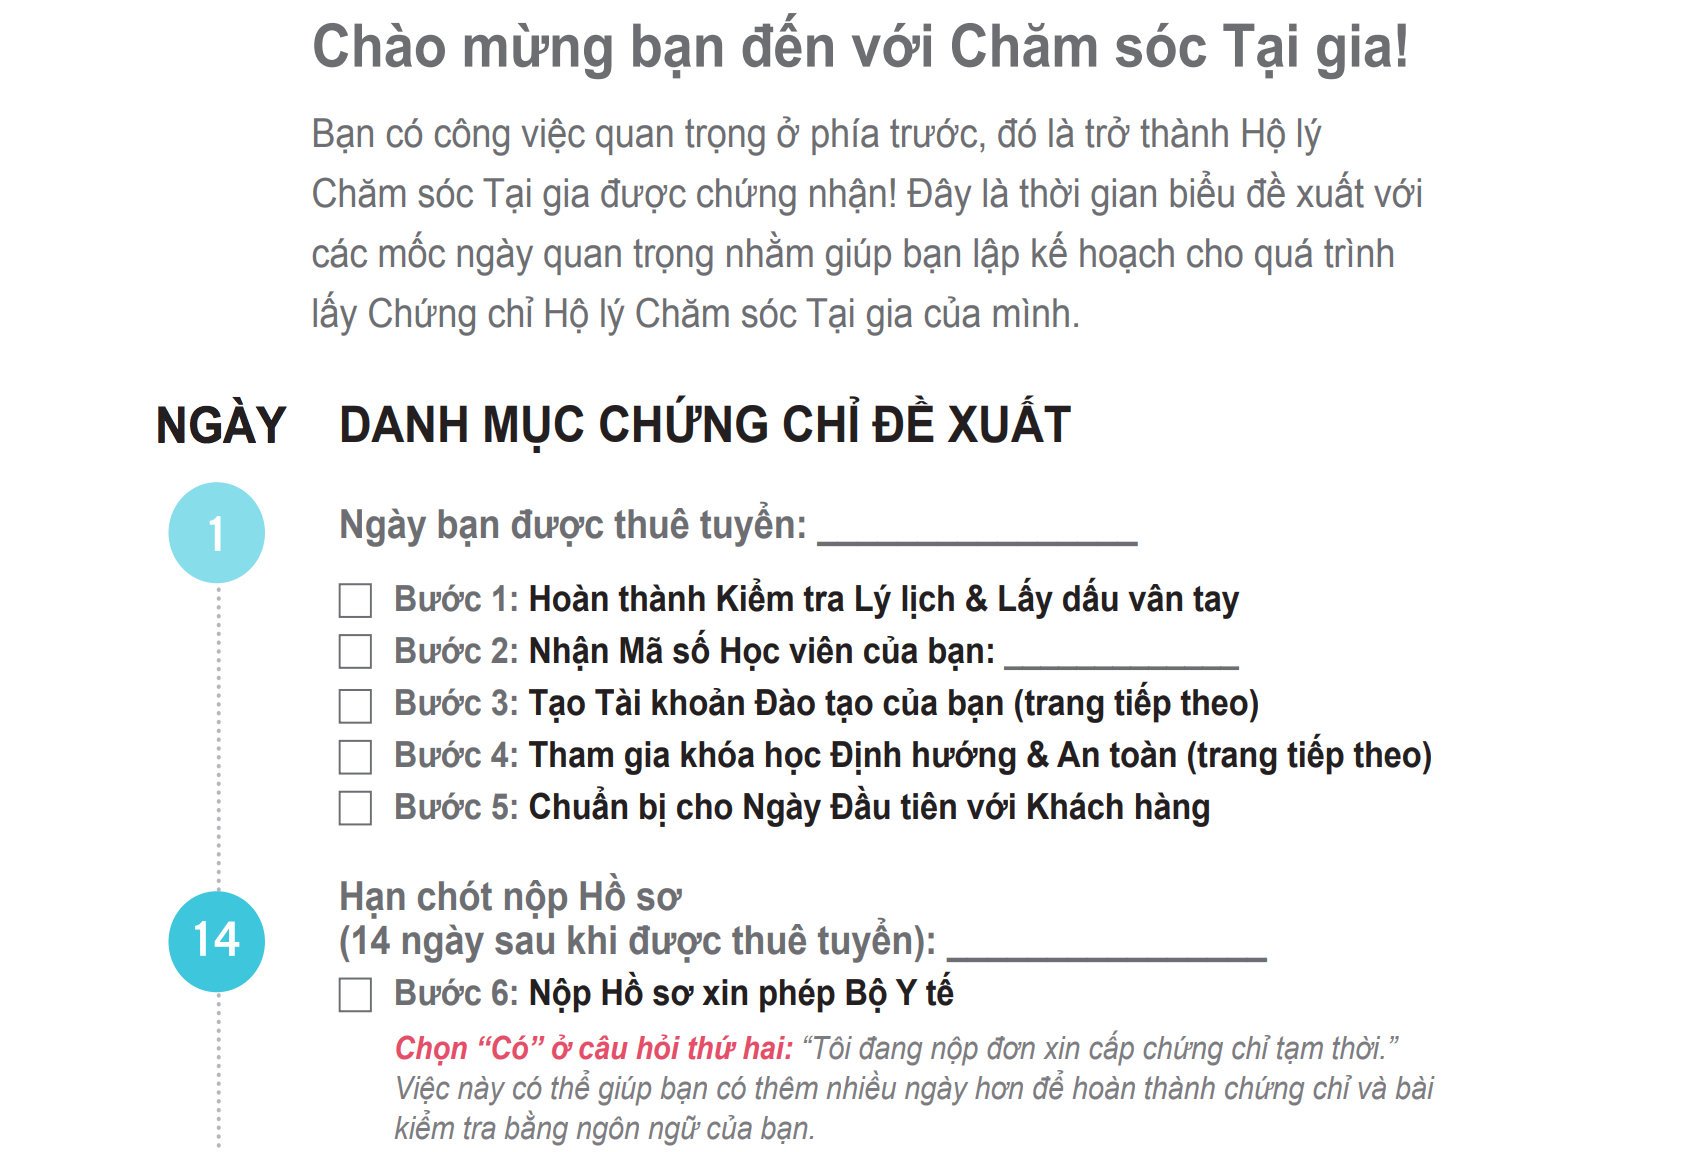 Vietnamese language caregiver checklist of proposals